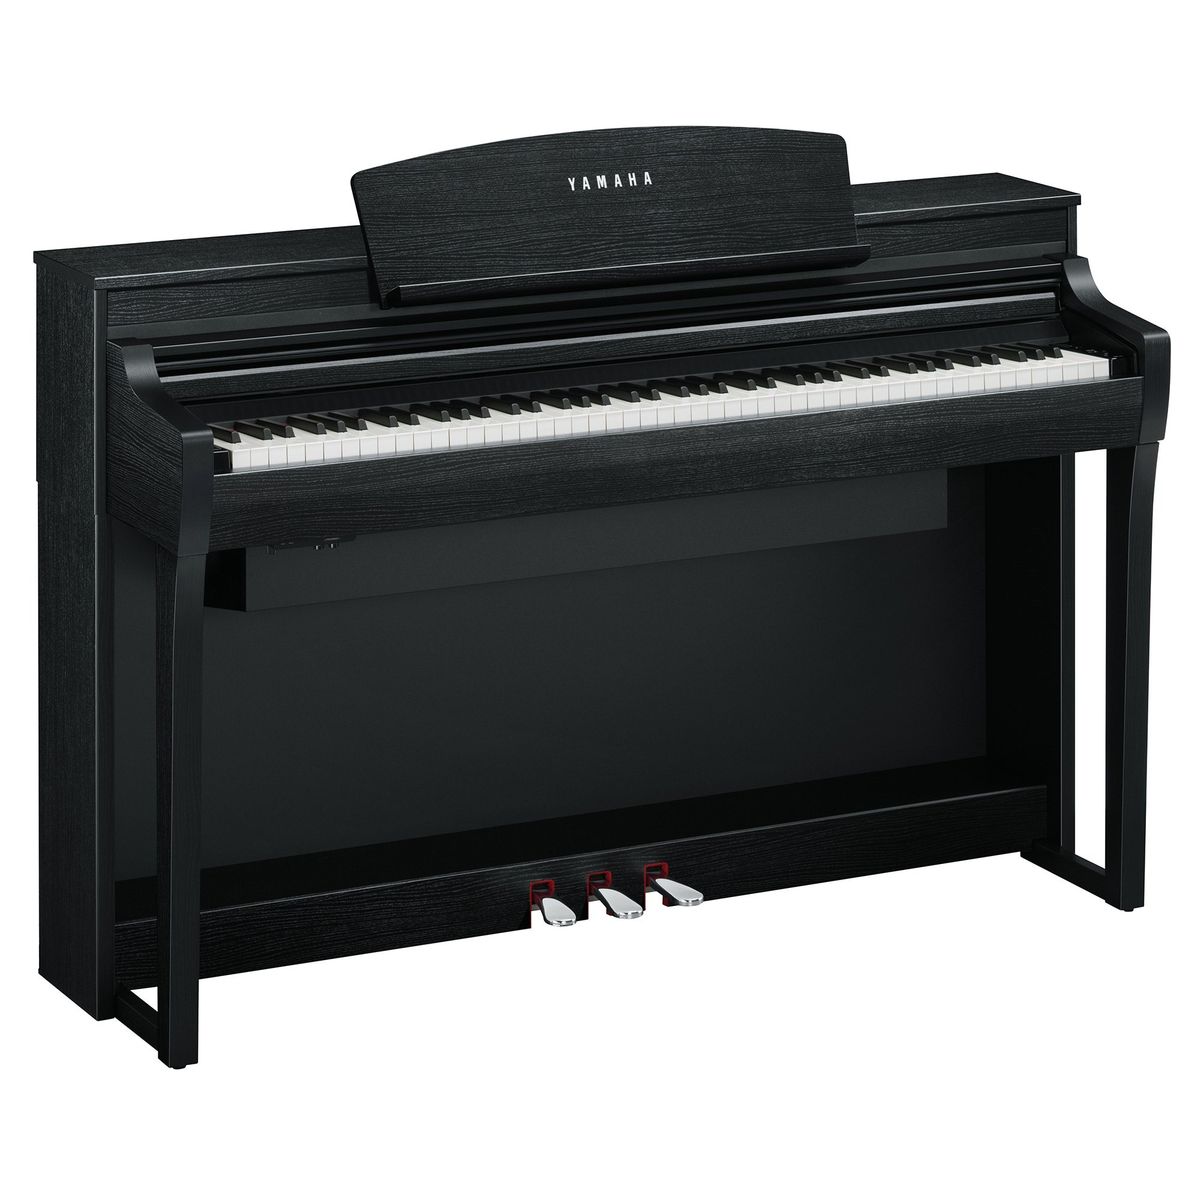 Цифровые пианино Yamaha CSP-275B 88 клавишной клавиатурой электронных пианино крышка pleuche липучки украшен бахромой красивые